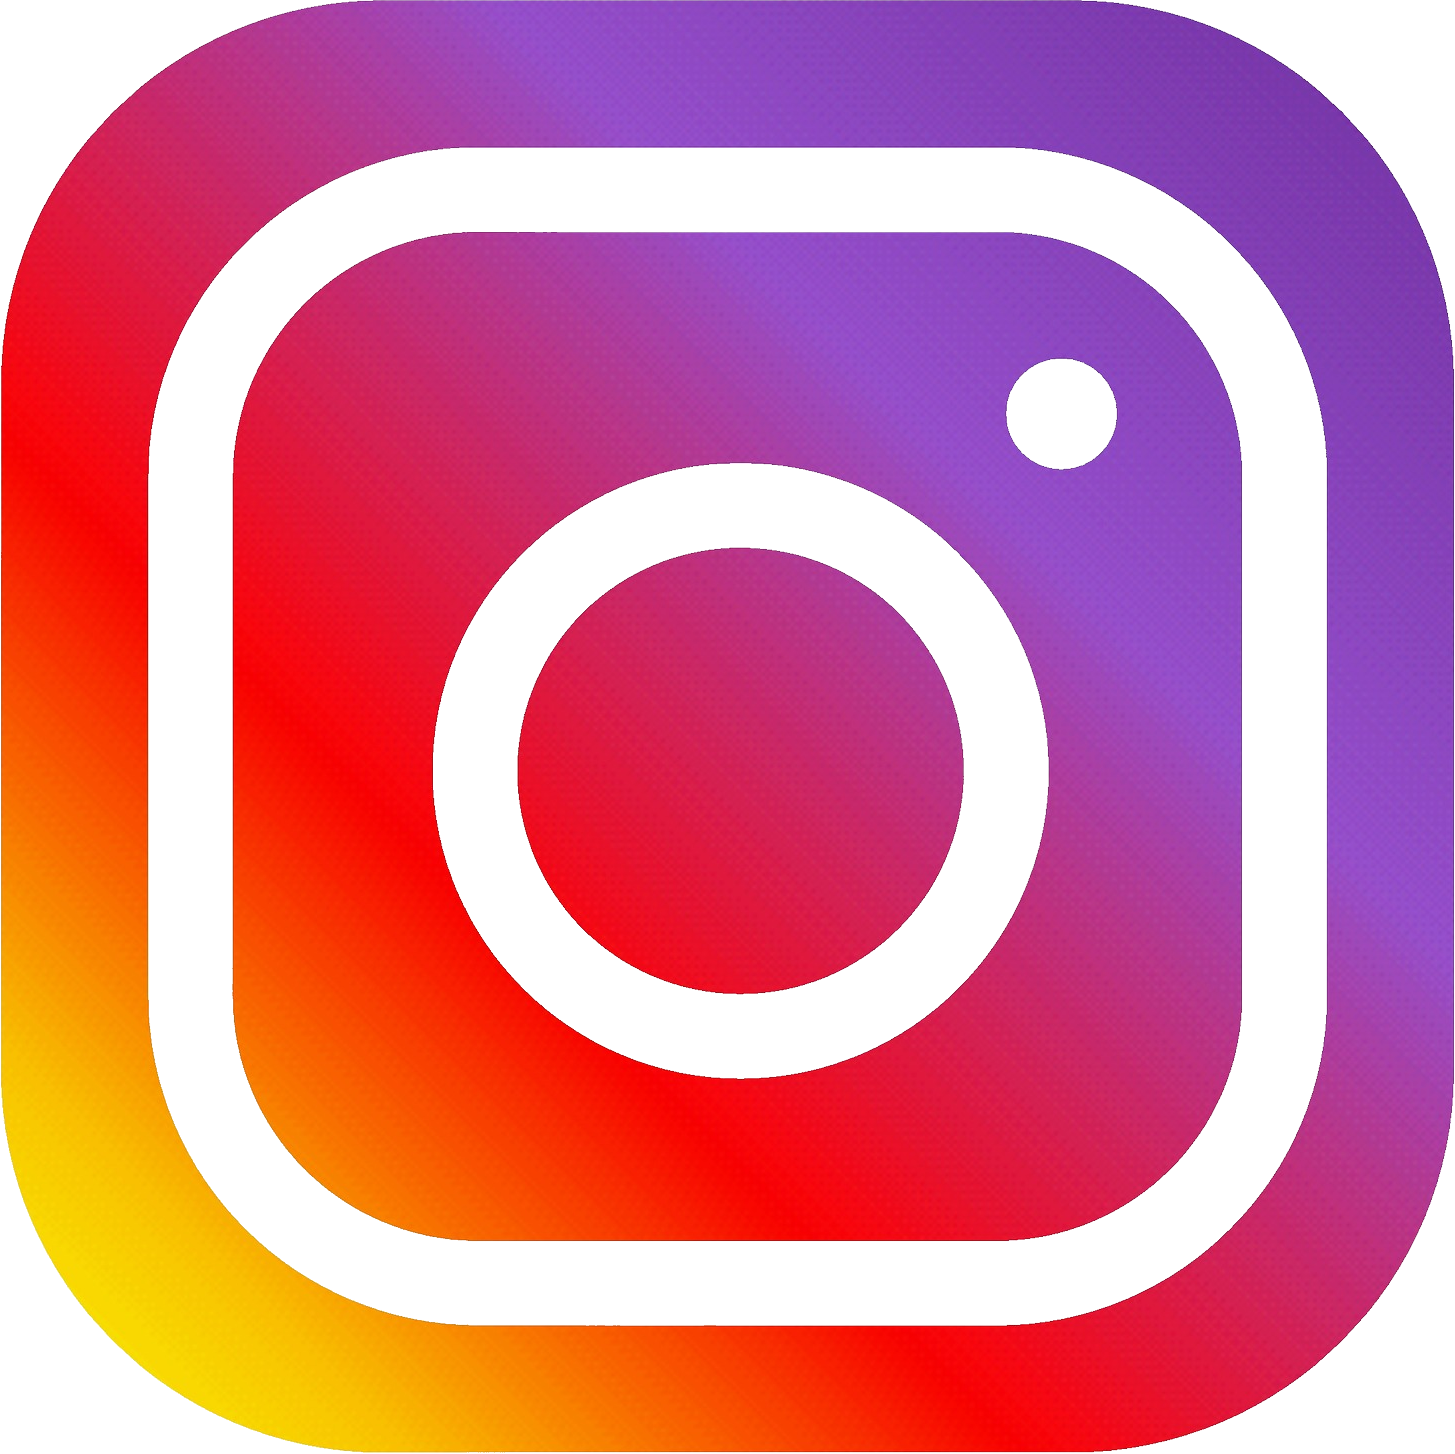 Kumpulan Caption Instagram Terbaru 2017 Caption Instagram 2017